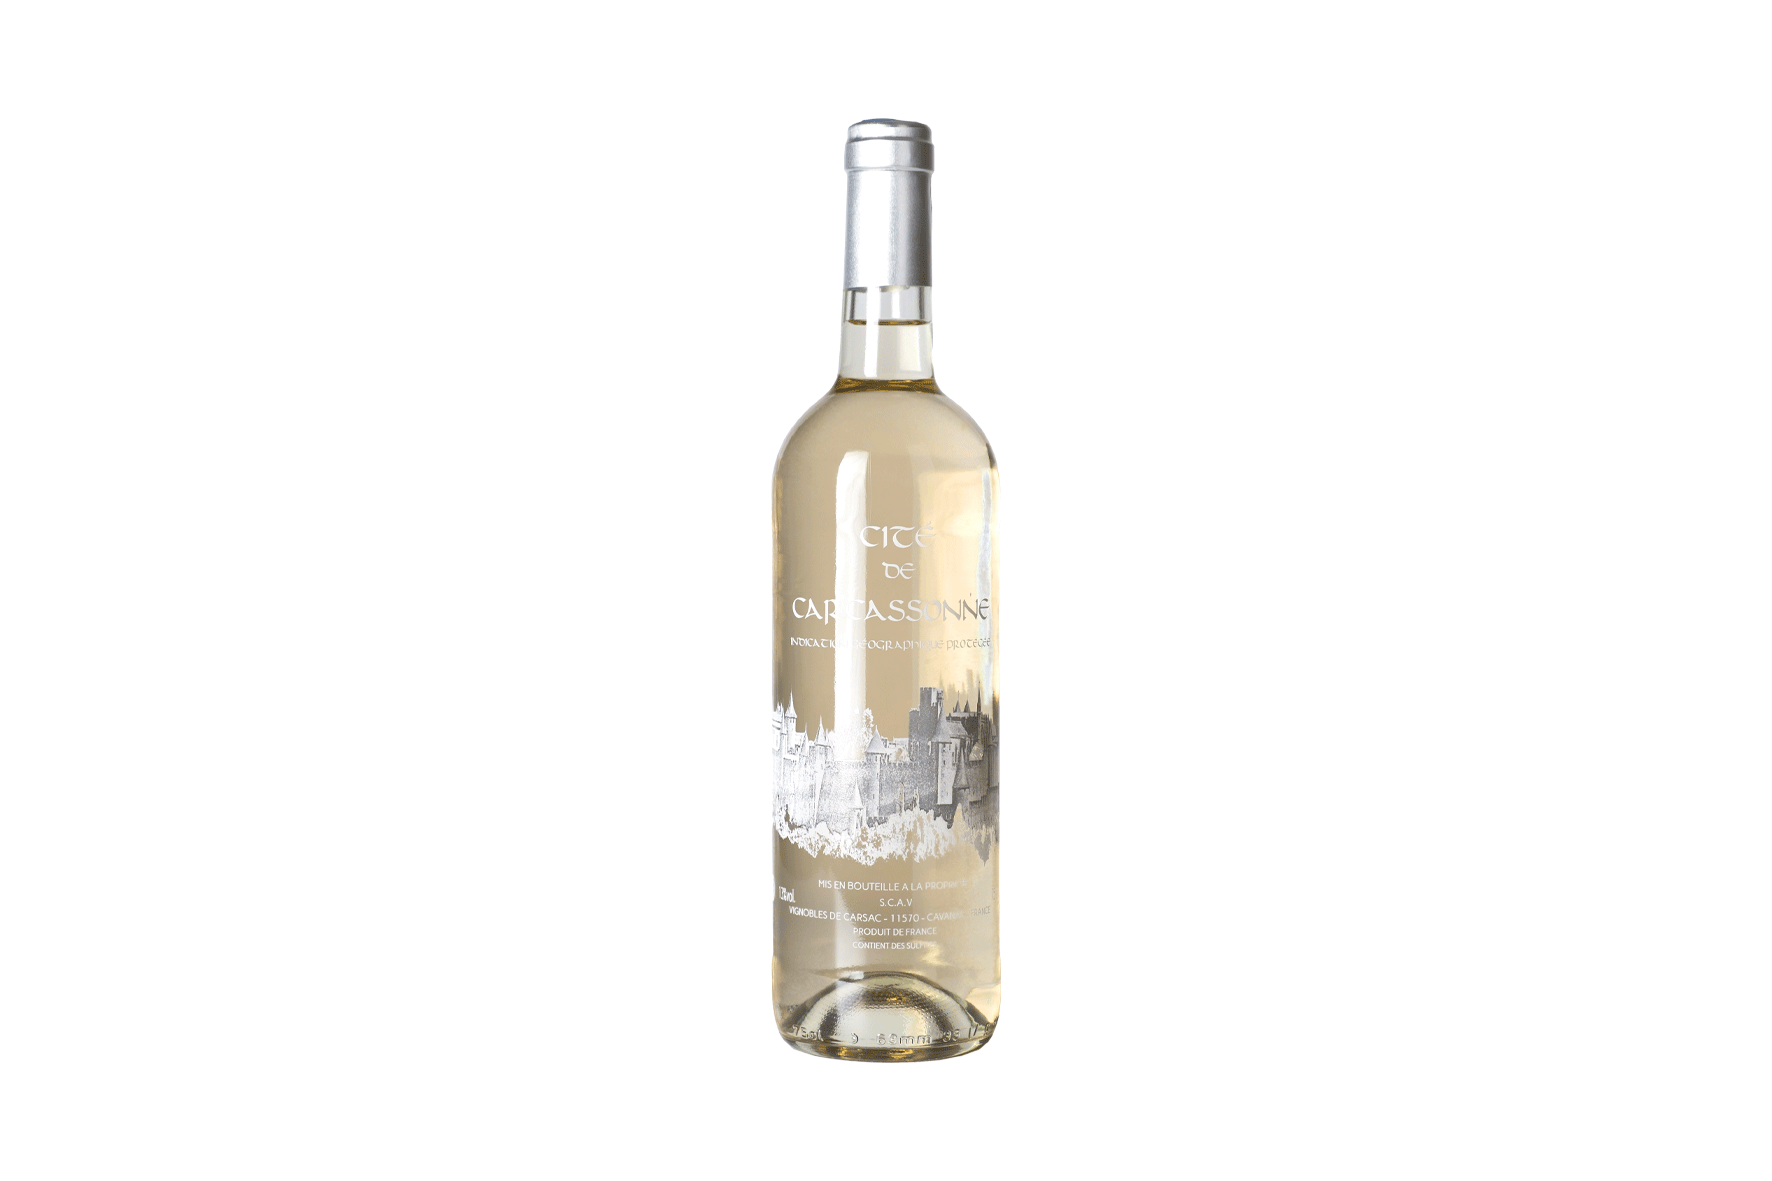 Bouteille de vin blanc sérigraphié cité de Carcassonne des Vignobles de Carsac